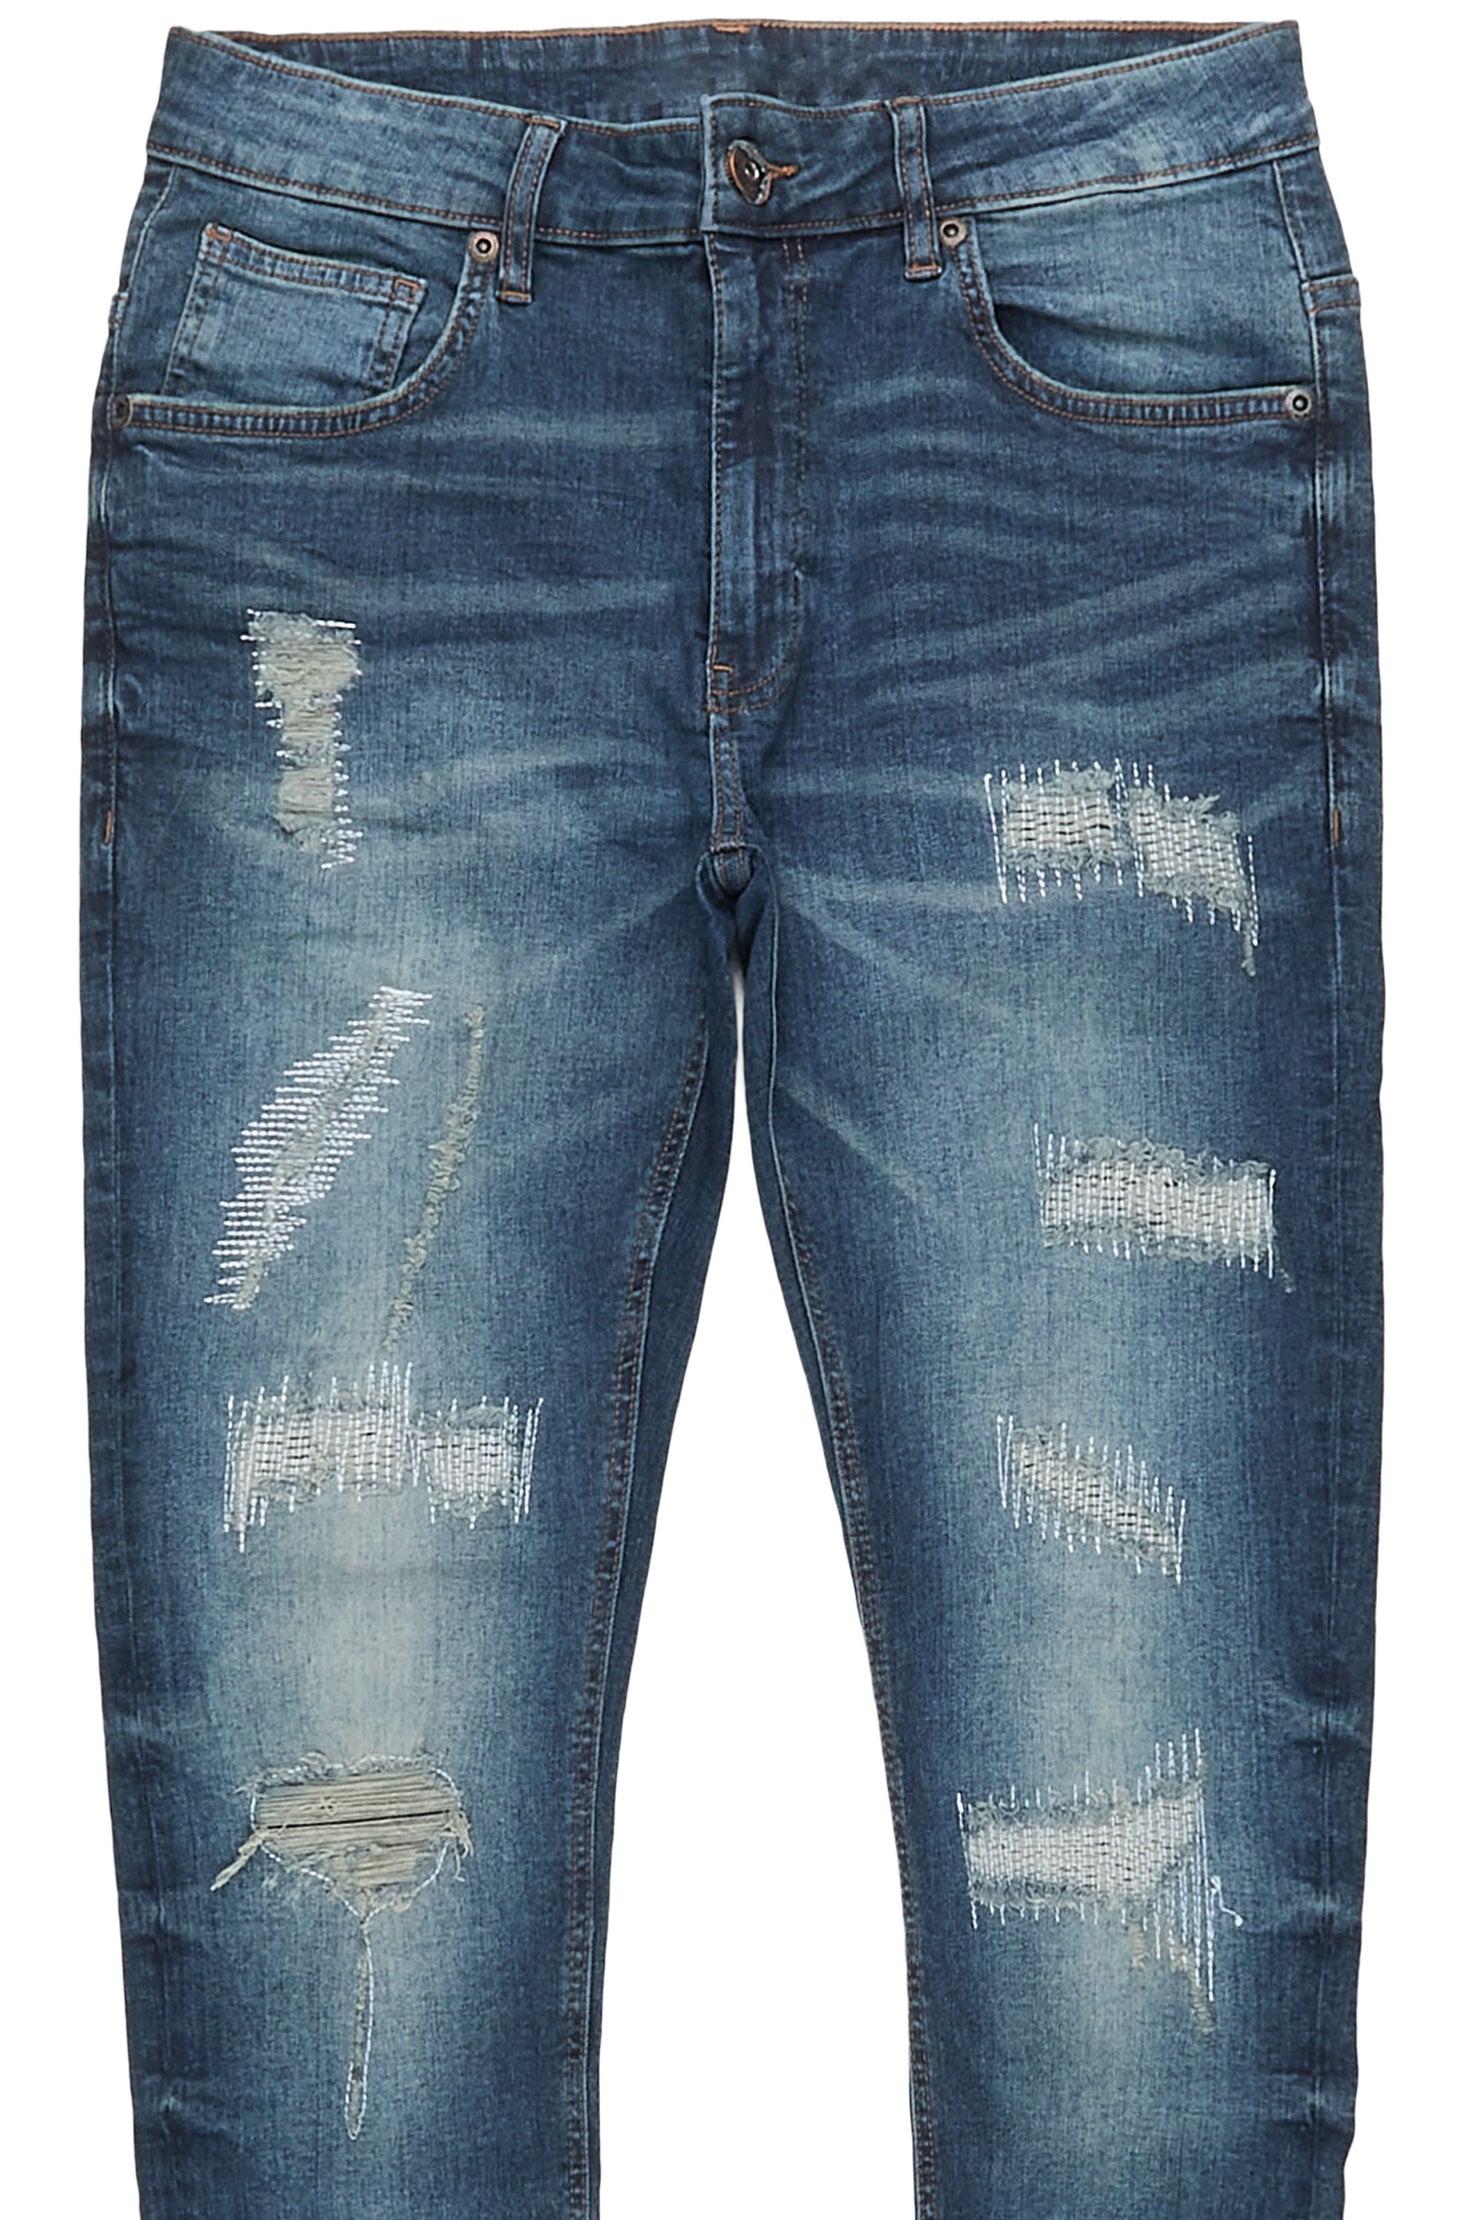 Juelz Dark Blue 5 Pocket Jean